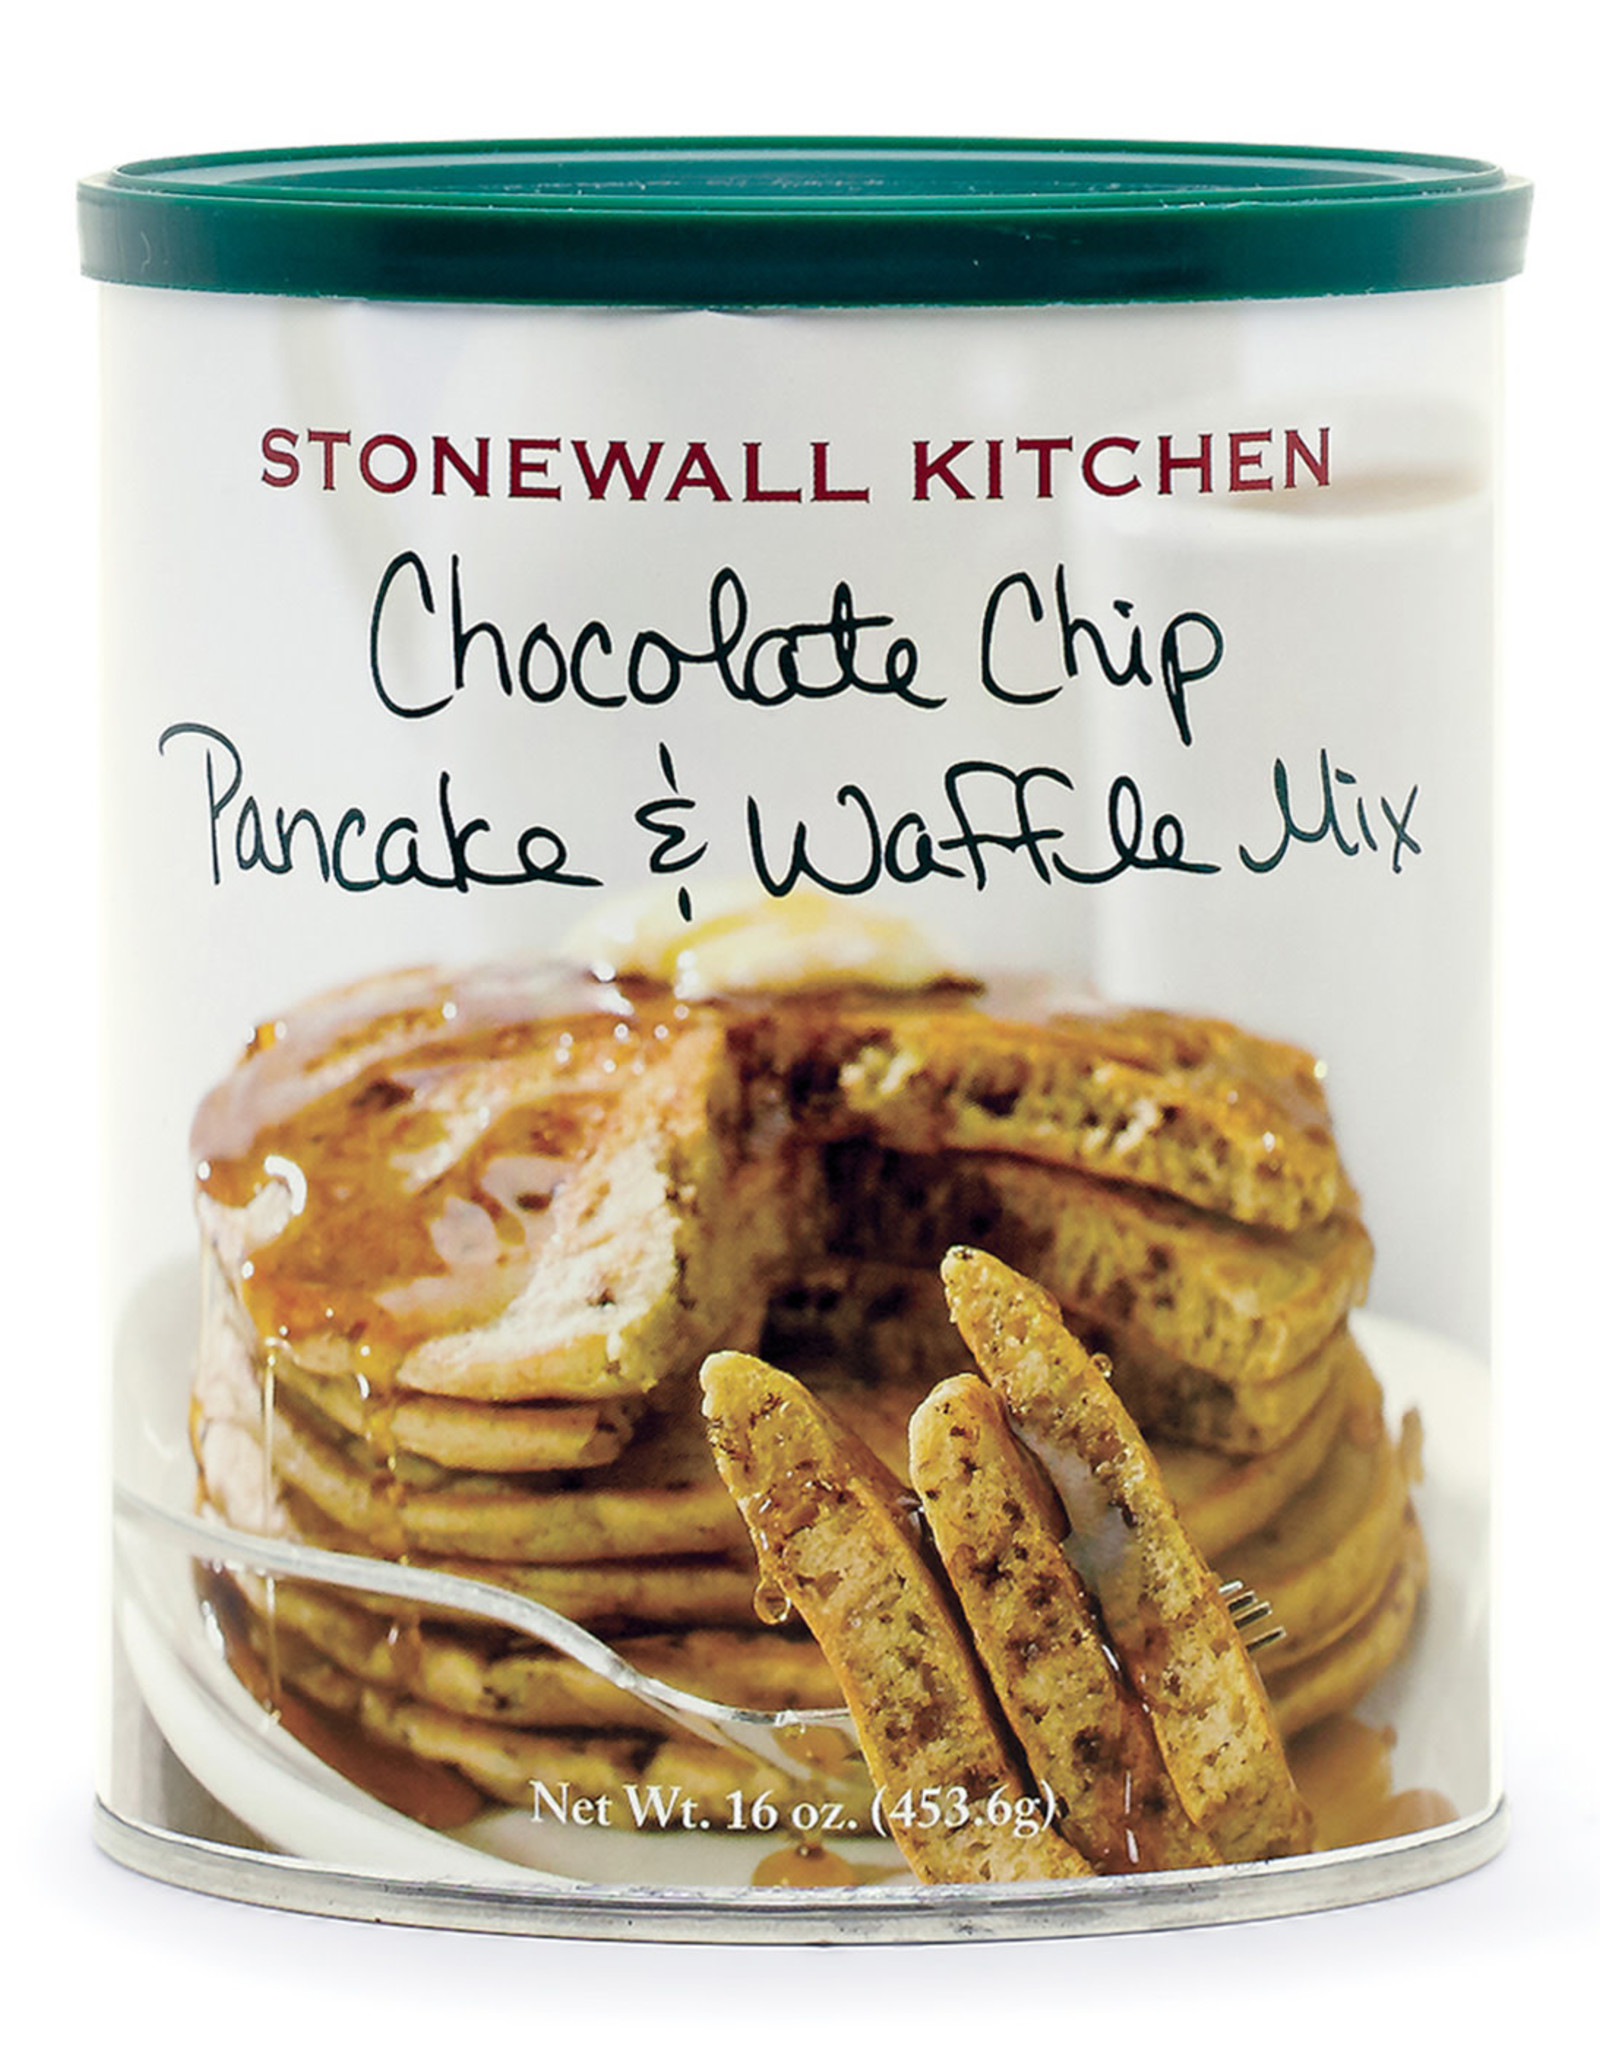 Stonewall Kitchen Chocolate Chip Pancake & Waffle Mix, 16 oz Can